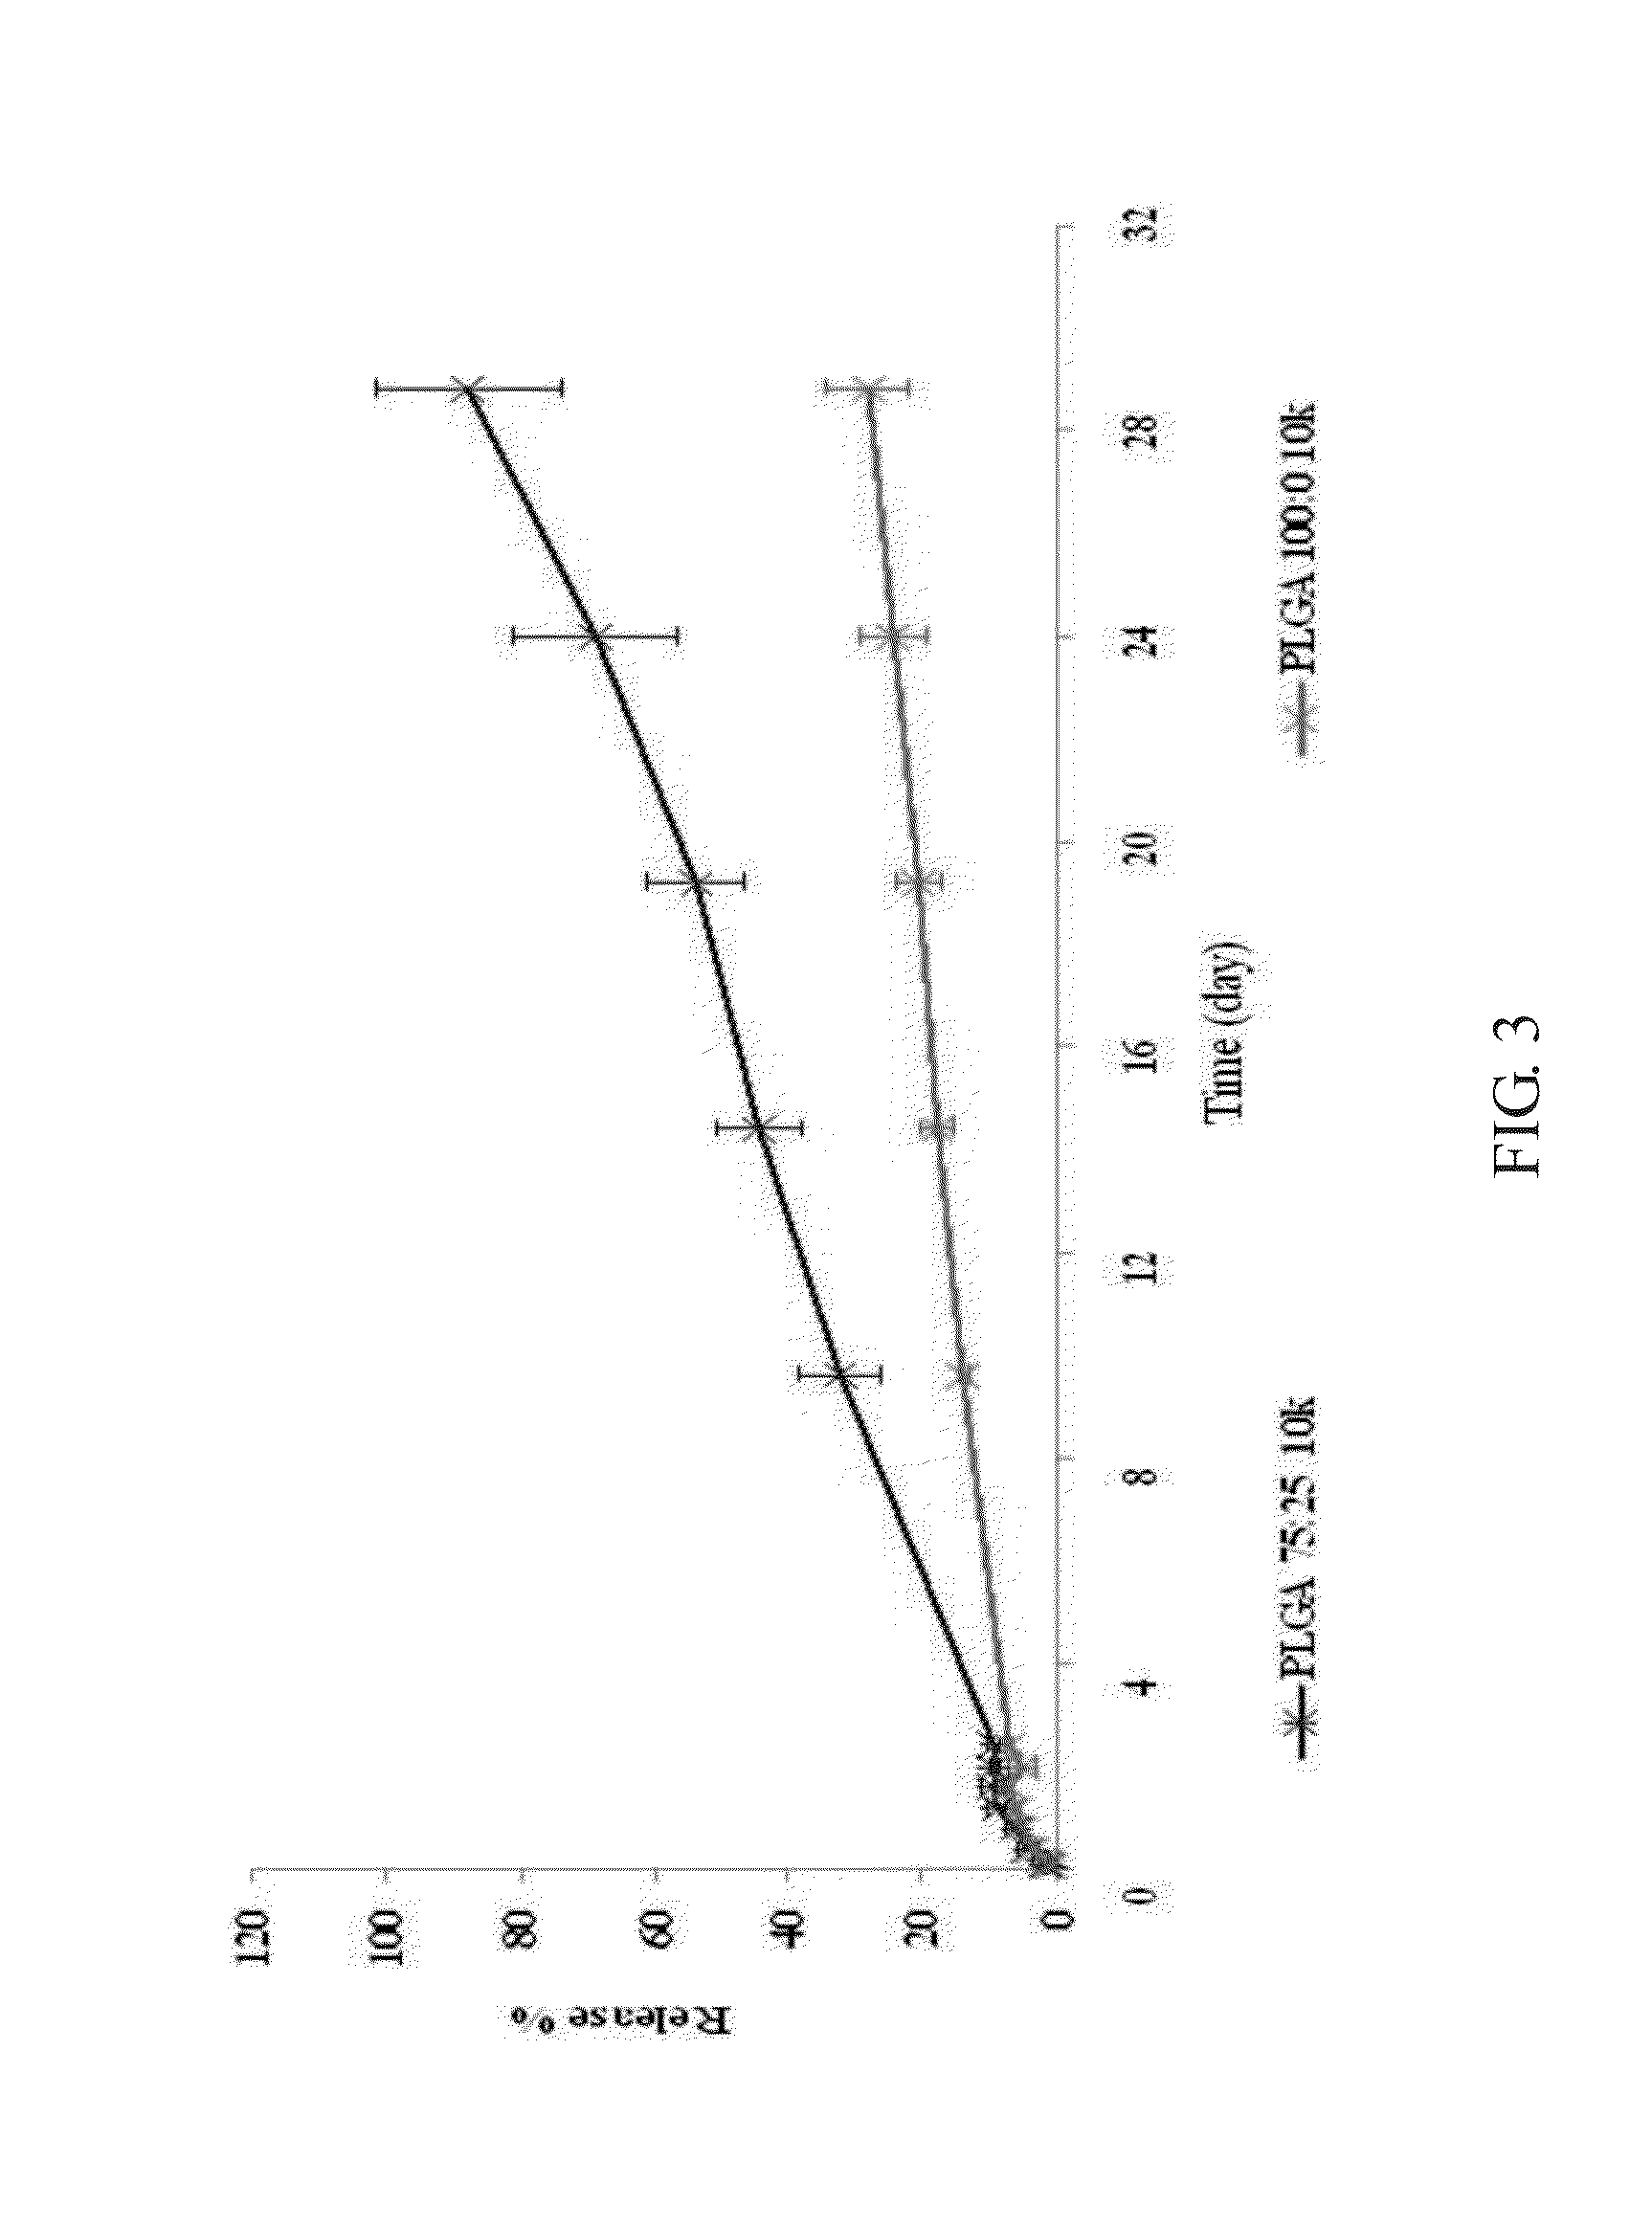 Analegisic (Sebacoyl dinalbuphine ester) PLGA controlled release formulation form